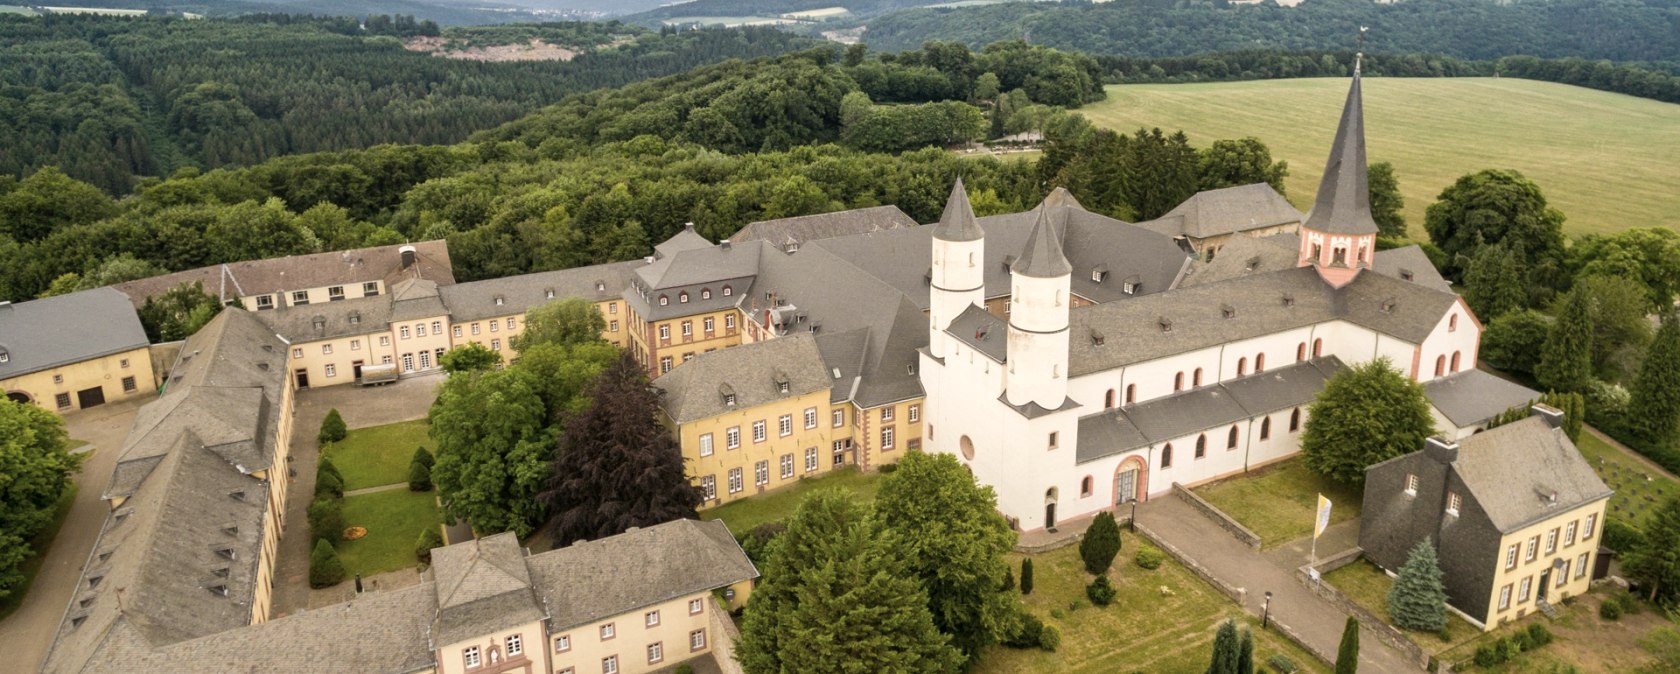 Luftansicht vom Kloster Steinfeld am Eifelsteig, © Eifel Tourismus/D. Ketz